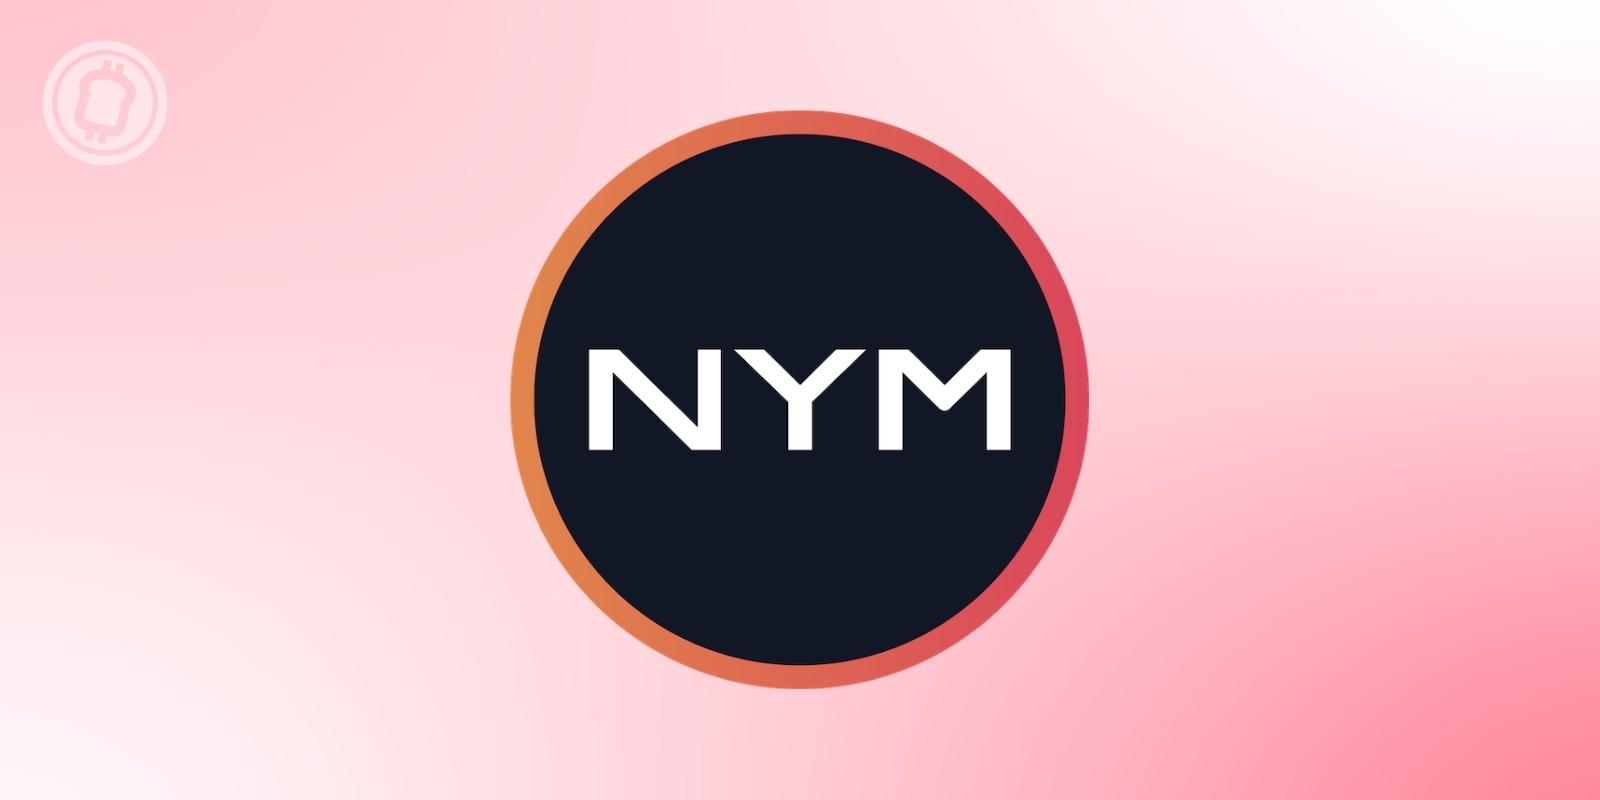 Nym Technologies (NYM) lève 300 millions de dollars pour améliorer la protection des données privées